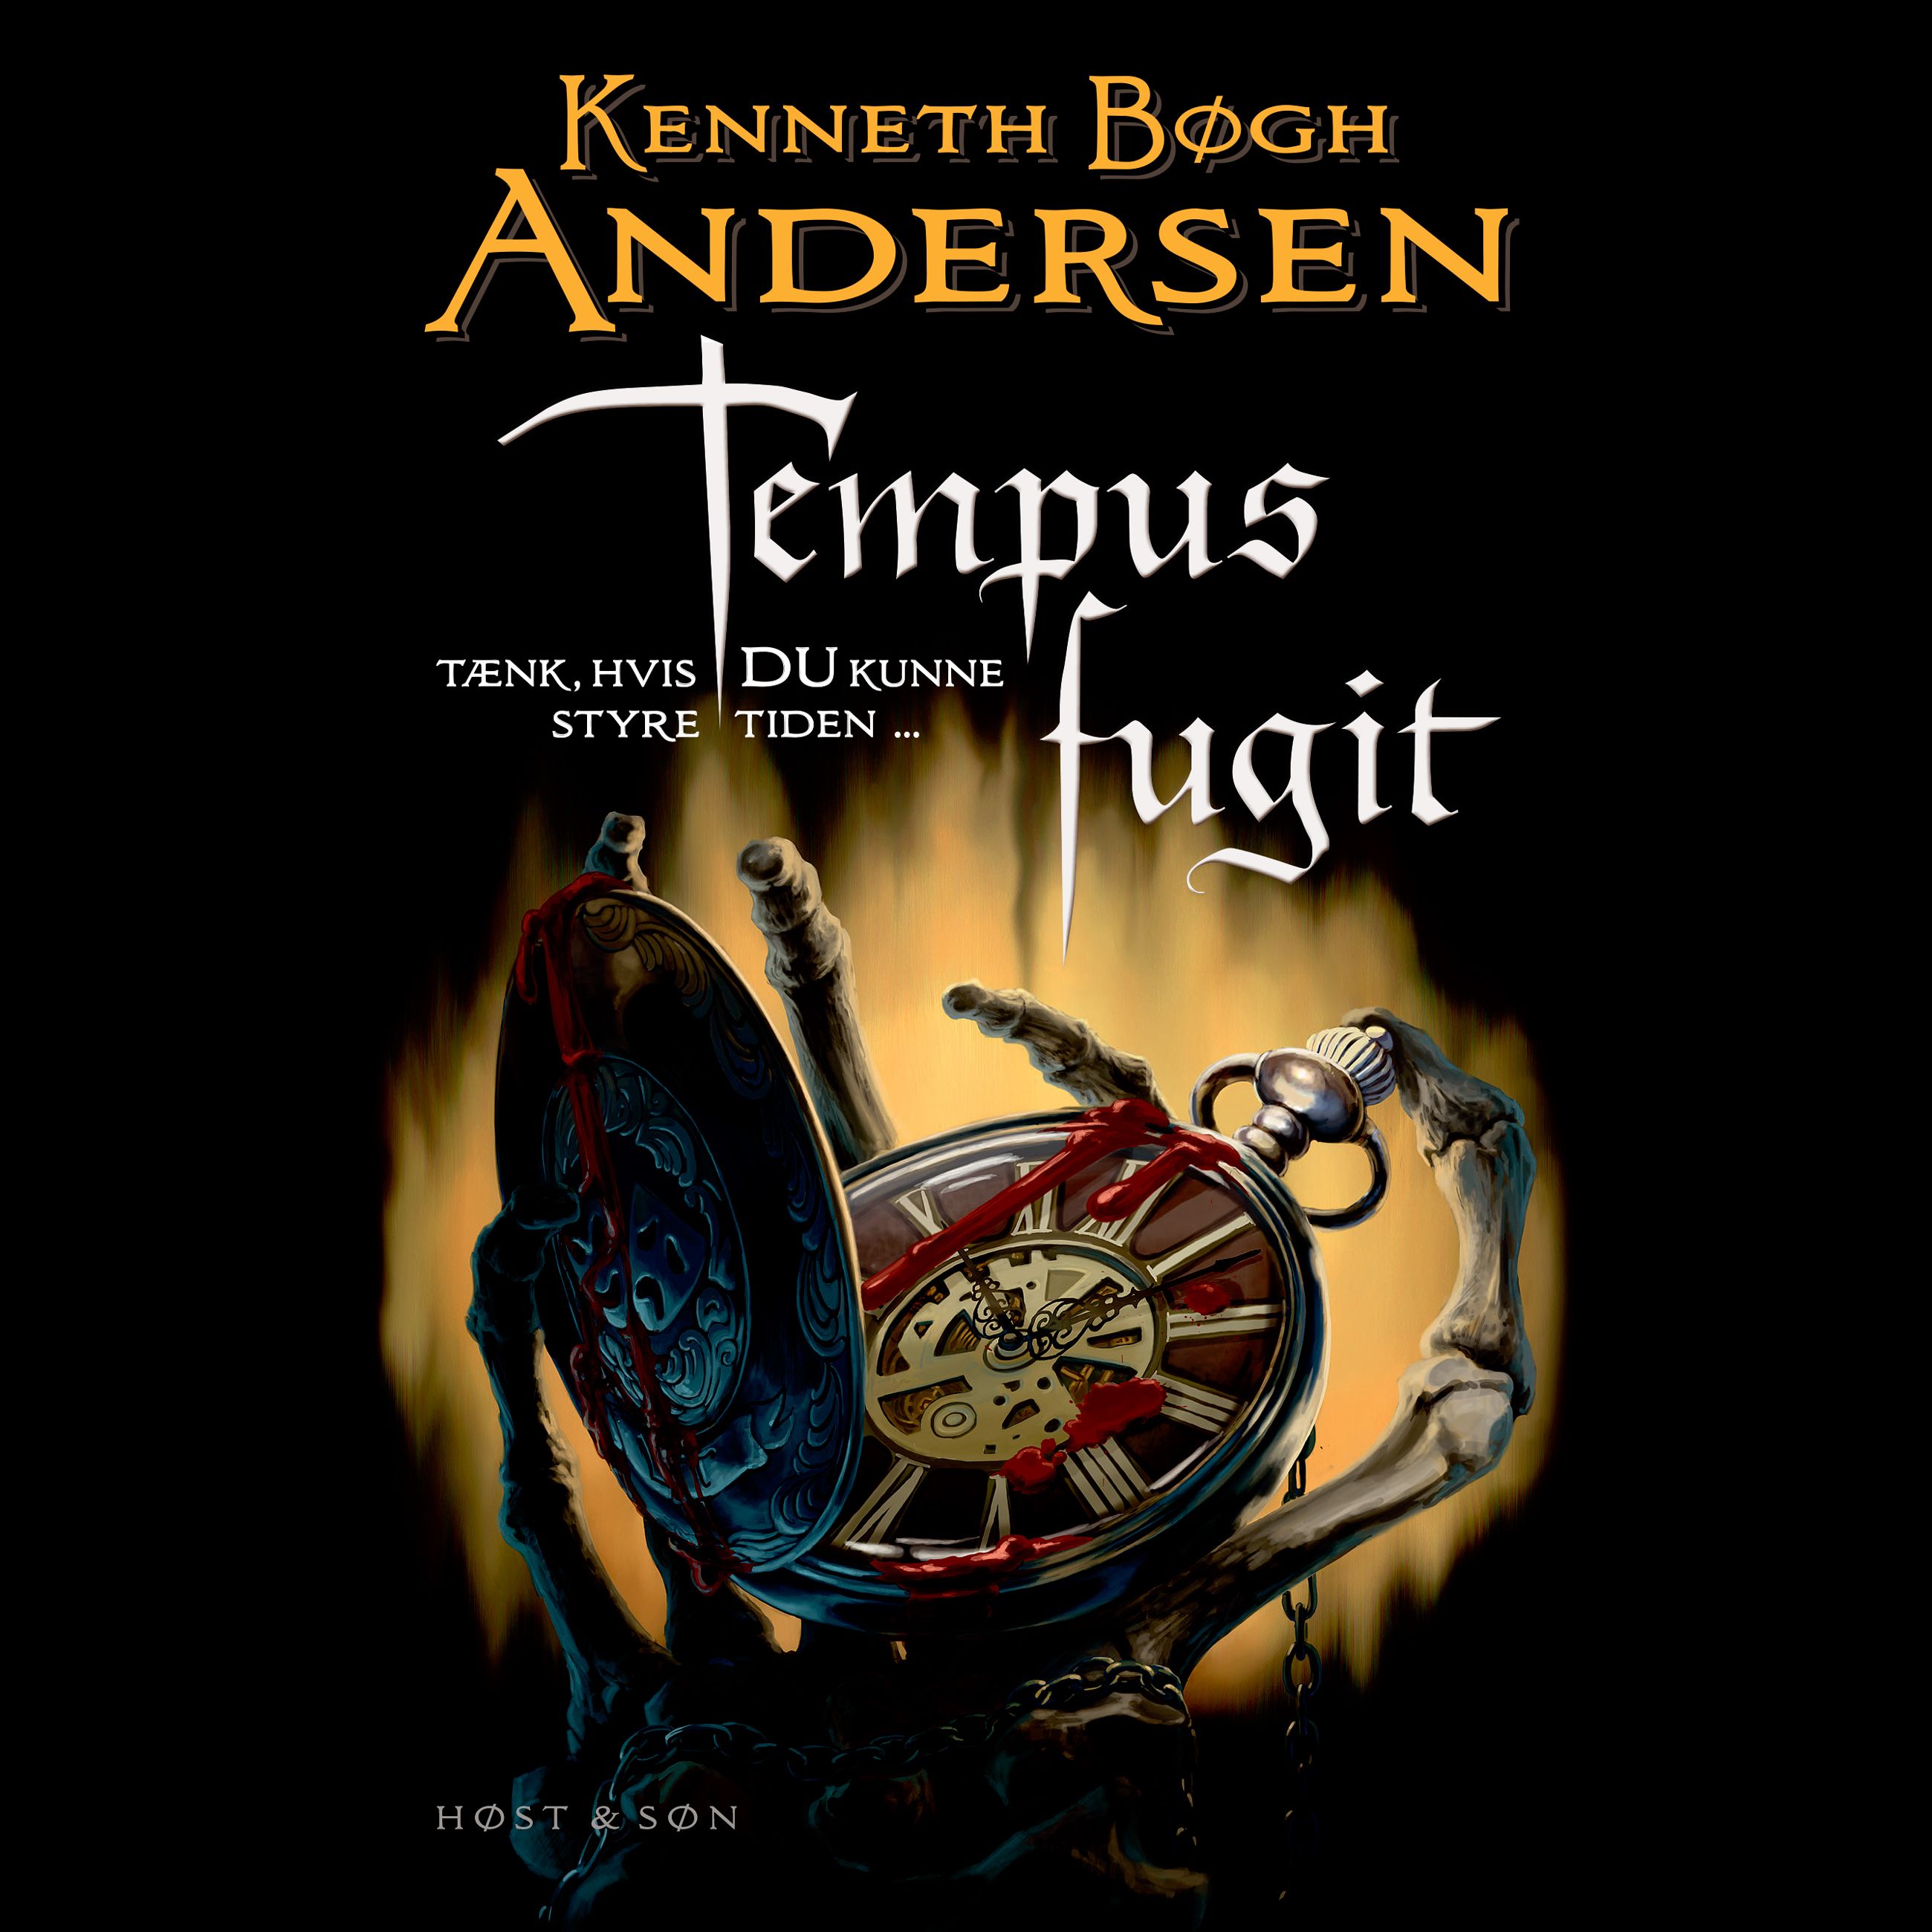 Tempus fugit, ljudbok av Kenneth Bøgh Andersen